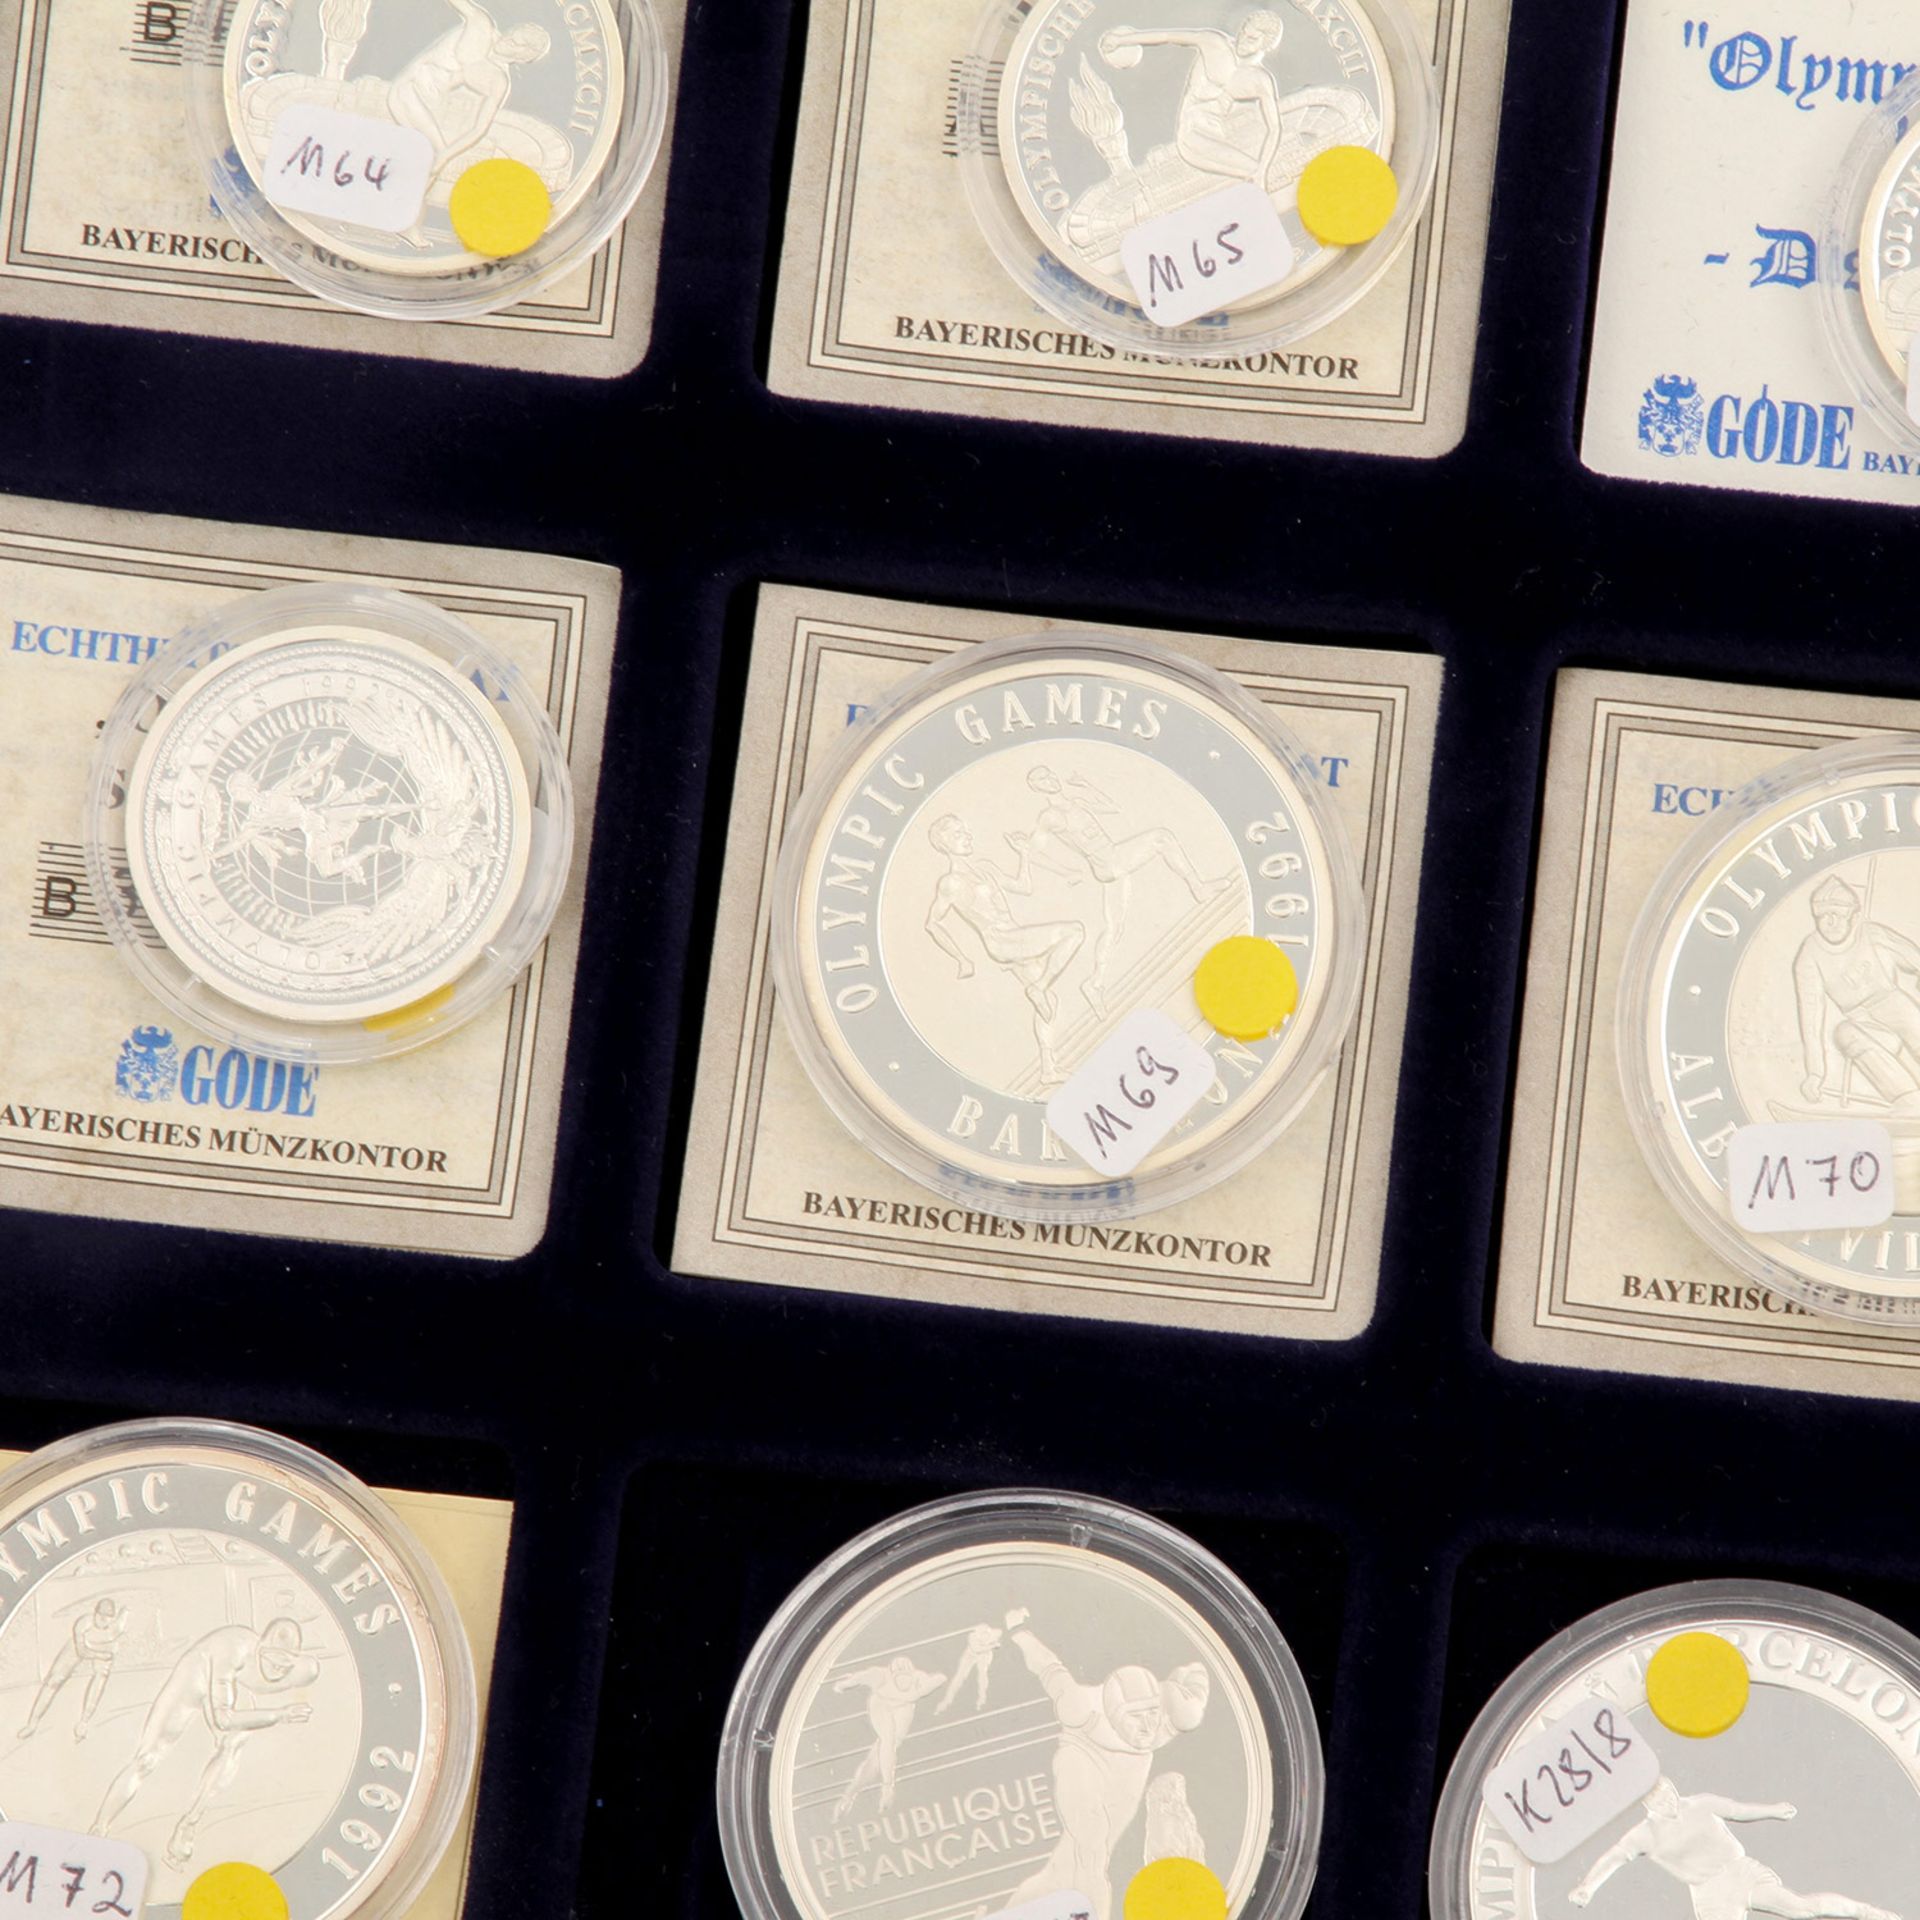 Lot Münzen und Medaillen, meist Olympia Thema, darunter auch wenige Can Dollars und China 5 Yuan - Bild 2 aus 5